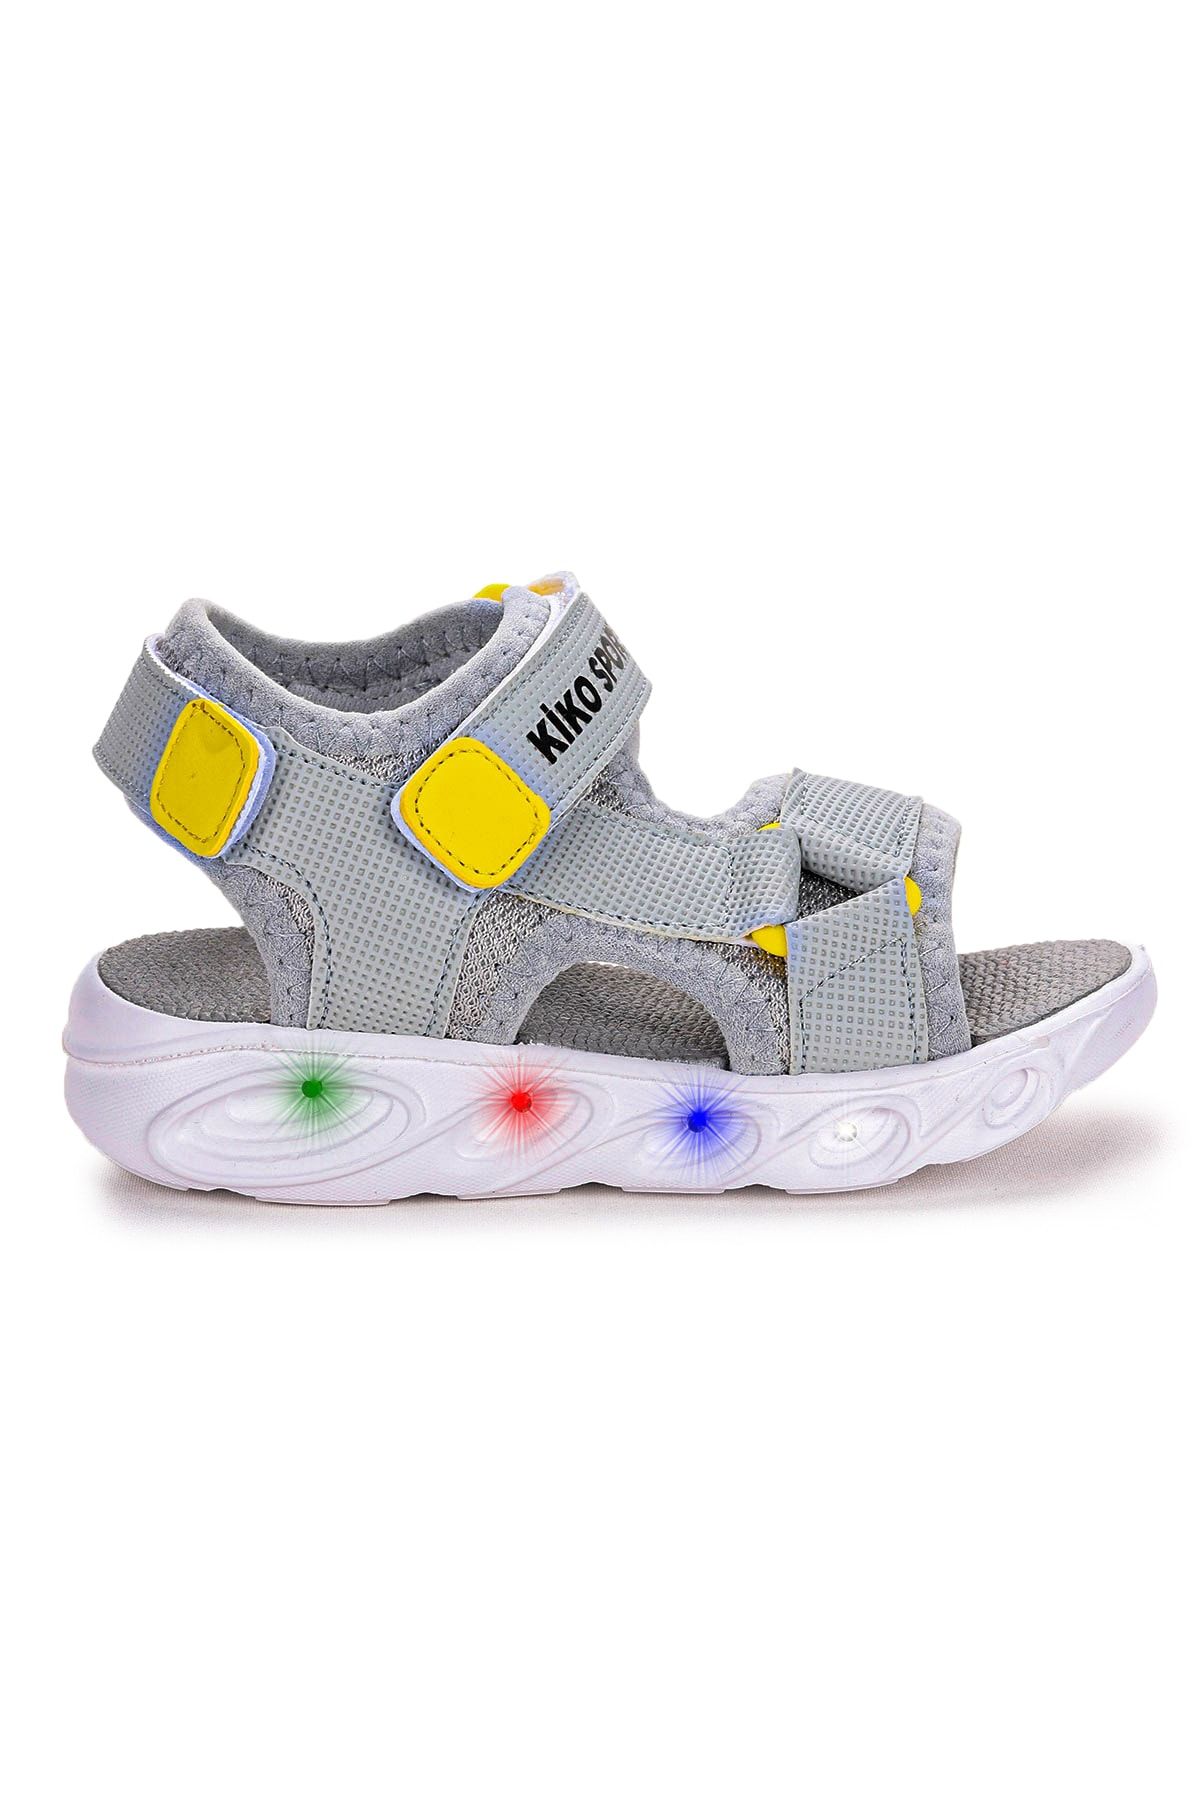 Kiko Kids 103 Işıklı Günlük Erkek Çocuk Cırtlı Sandalet Ayakkabı